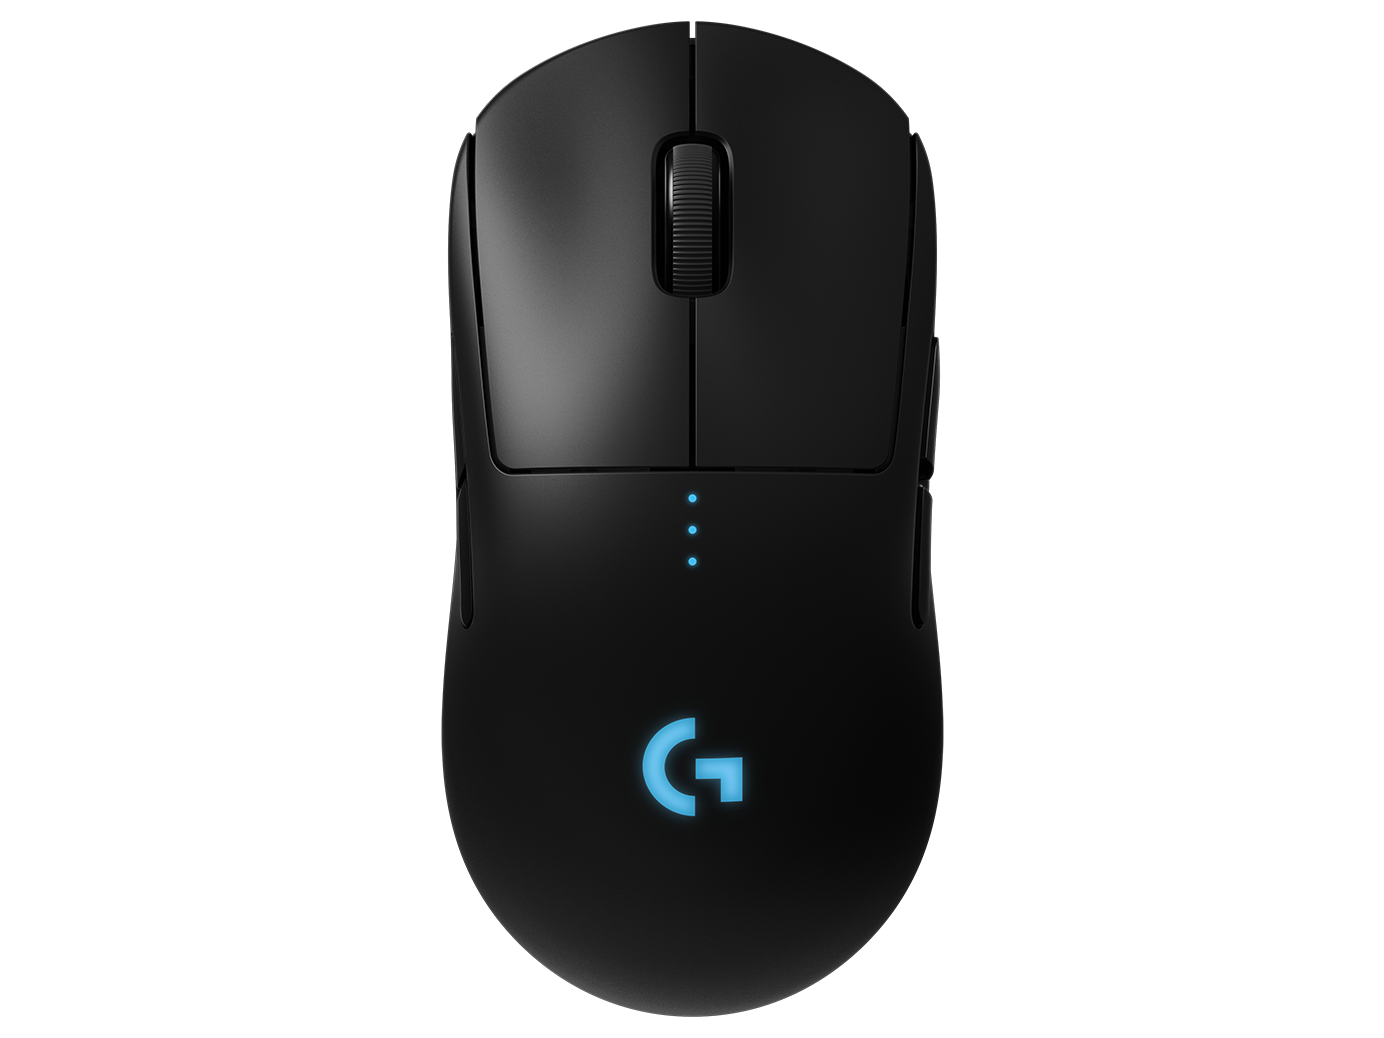 Chuột chơi game không dây Logitech G Pro cho người chơi thể thao điện tử chuyên nghiệp (Logitech G Pro Gaming Mouse for Esports Pros)